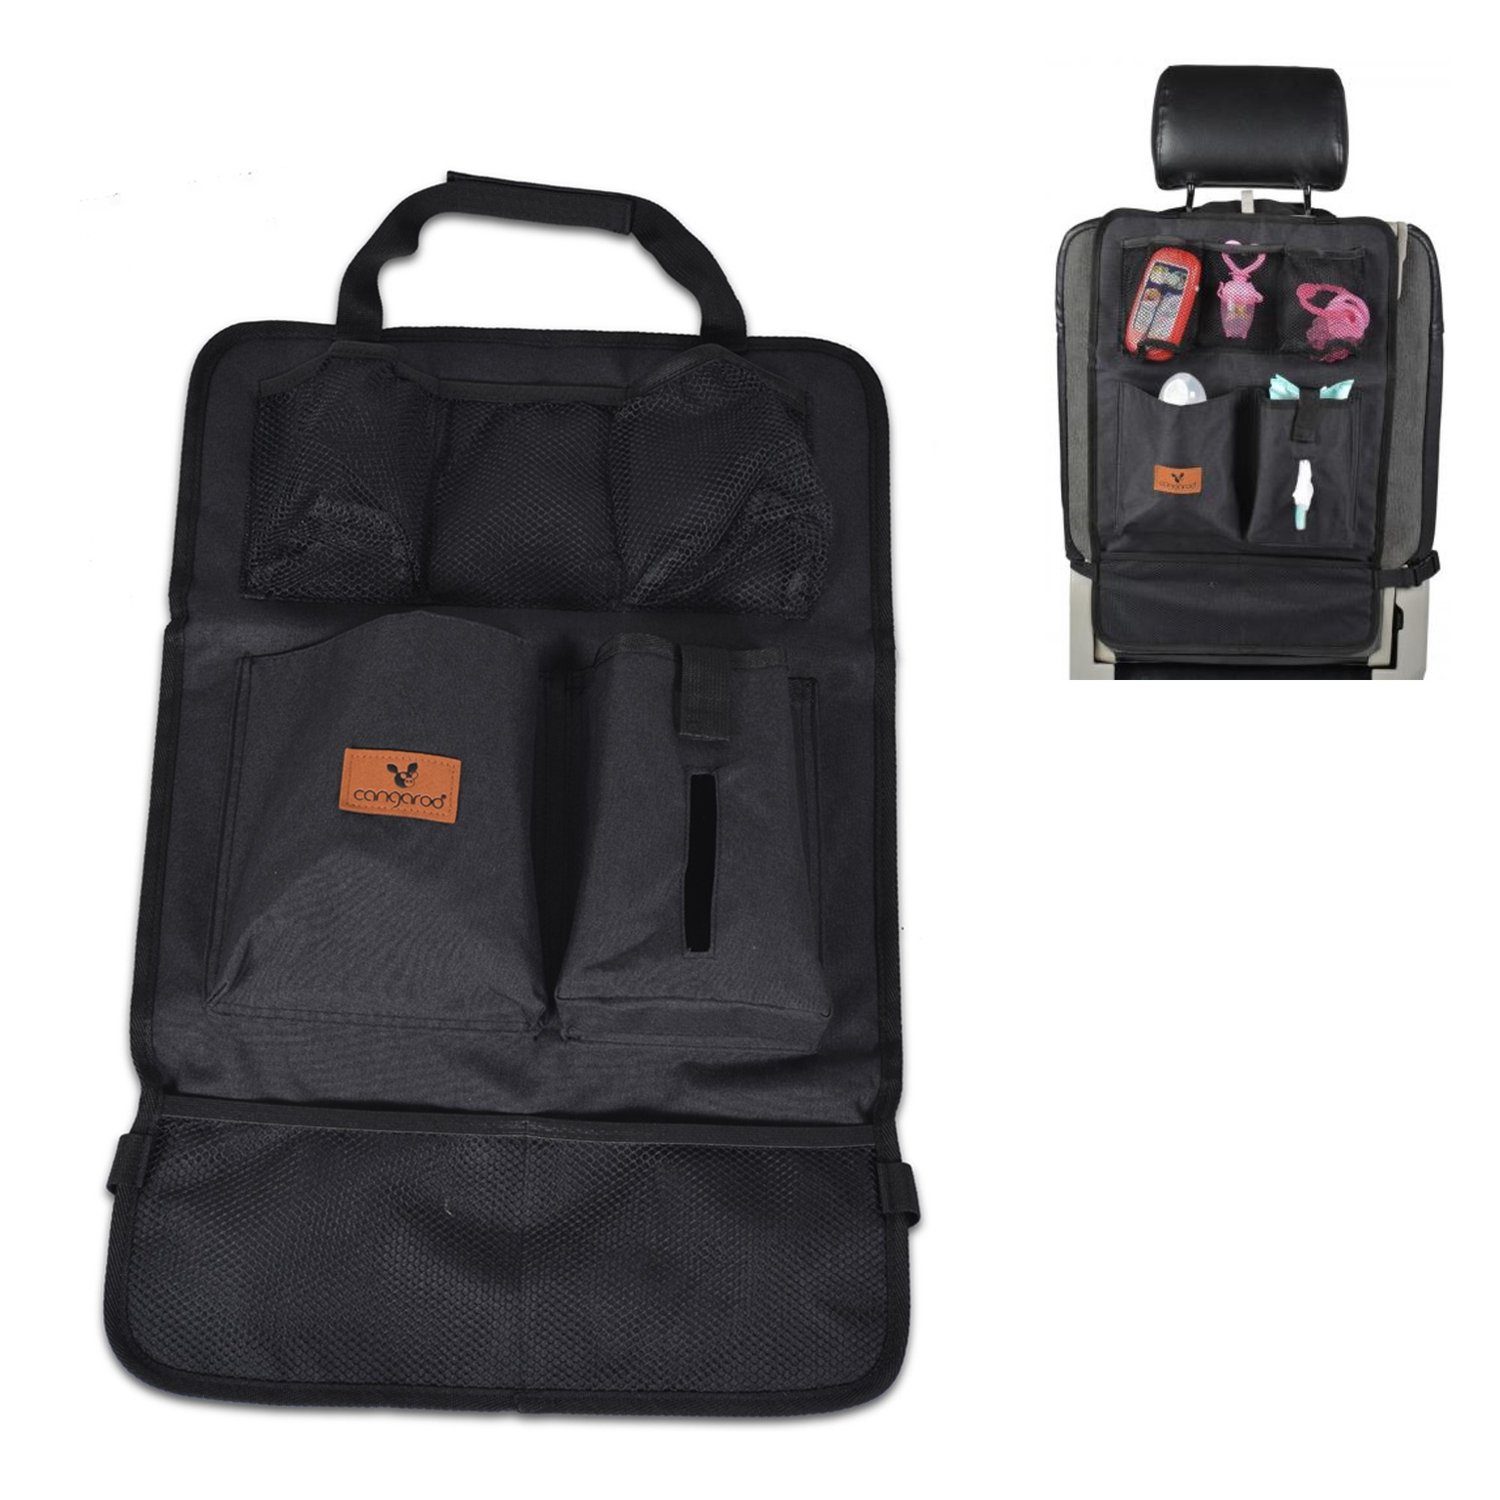 Cangaroo Auto-Rückenlehnentasche Organizer für Auto mit Taschen (1-tlg), Reise Organizer Rückenlehnenschutz mit Taschen schwarz